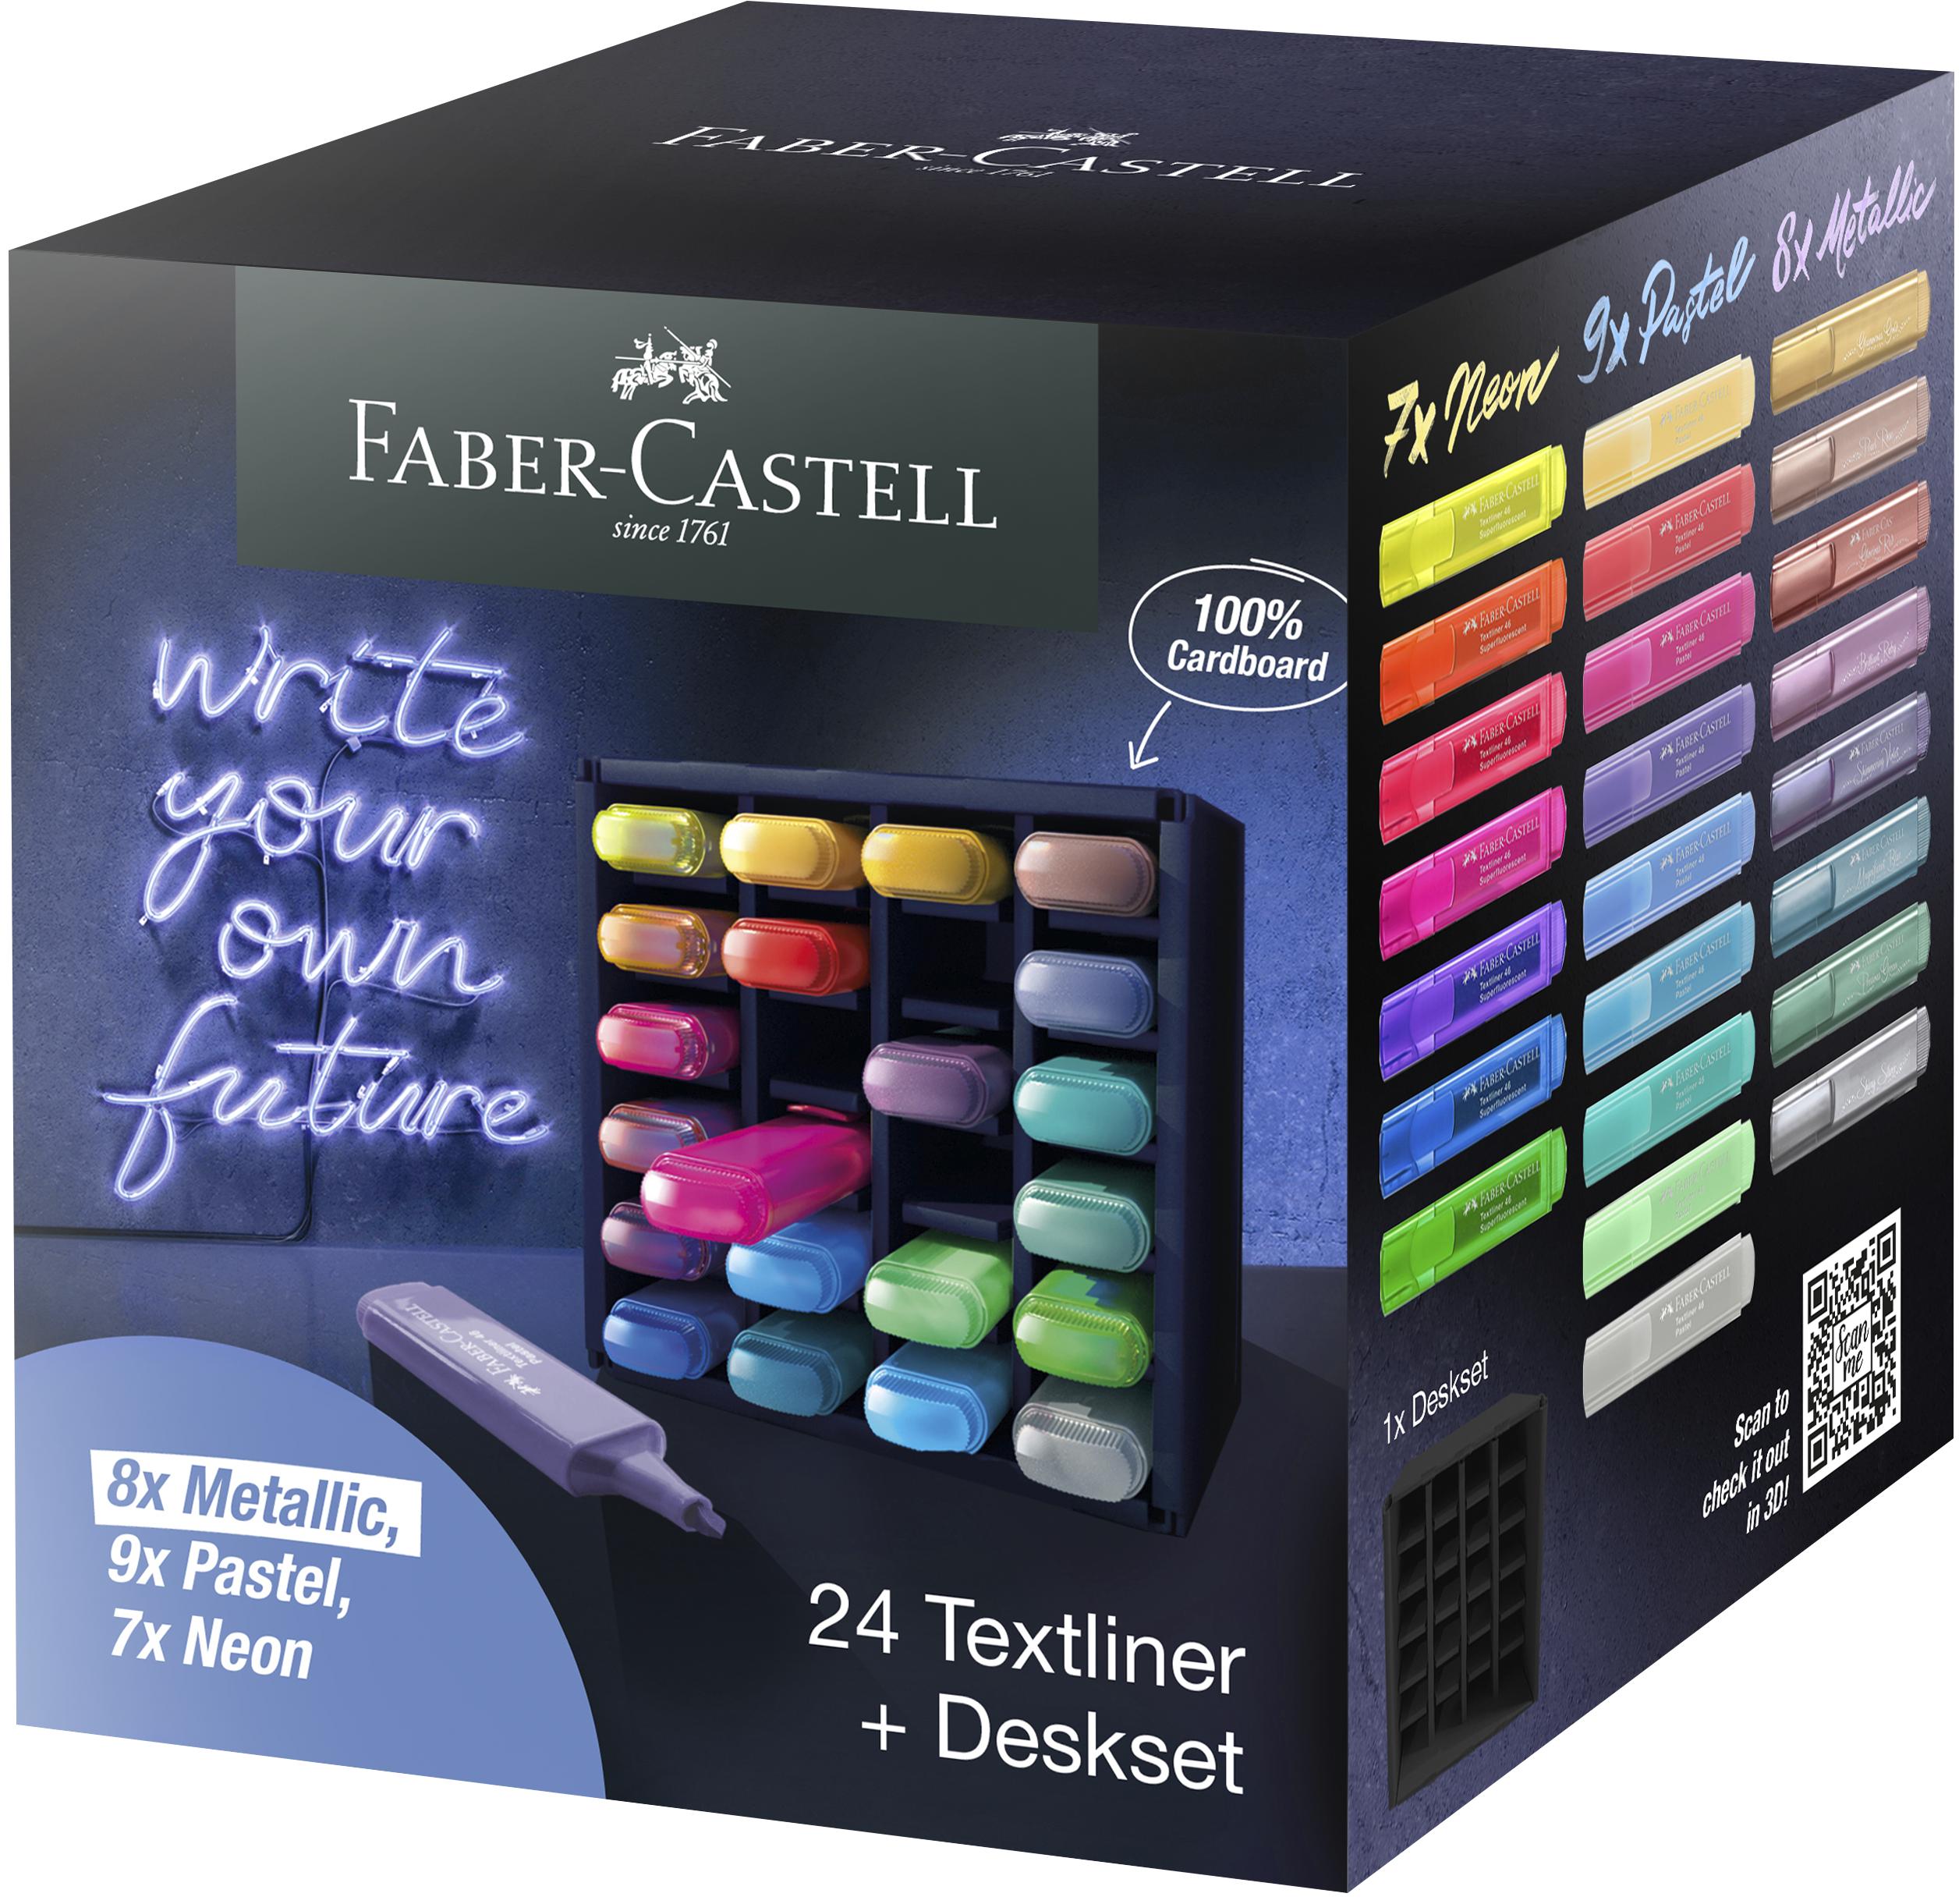 Faber-Castell - Highlighter TL 46 deskset (24 pcs) (254602)